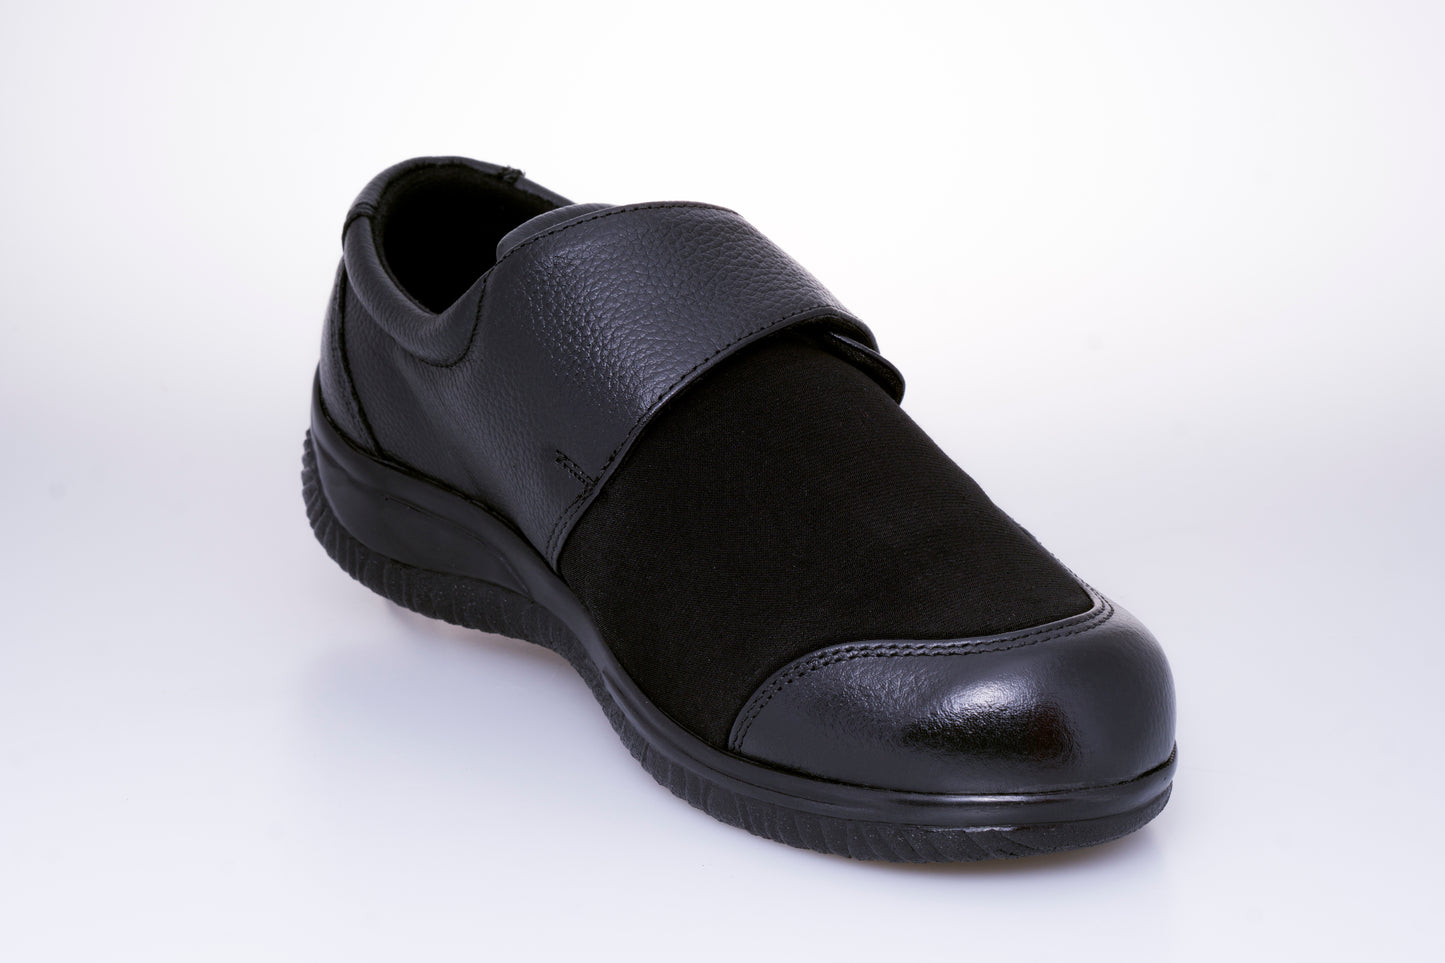 Zapatos cómodos con velcro para mujer - Modelo 5119